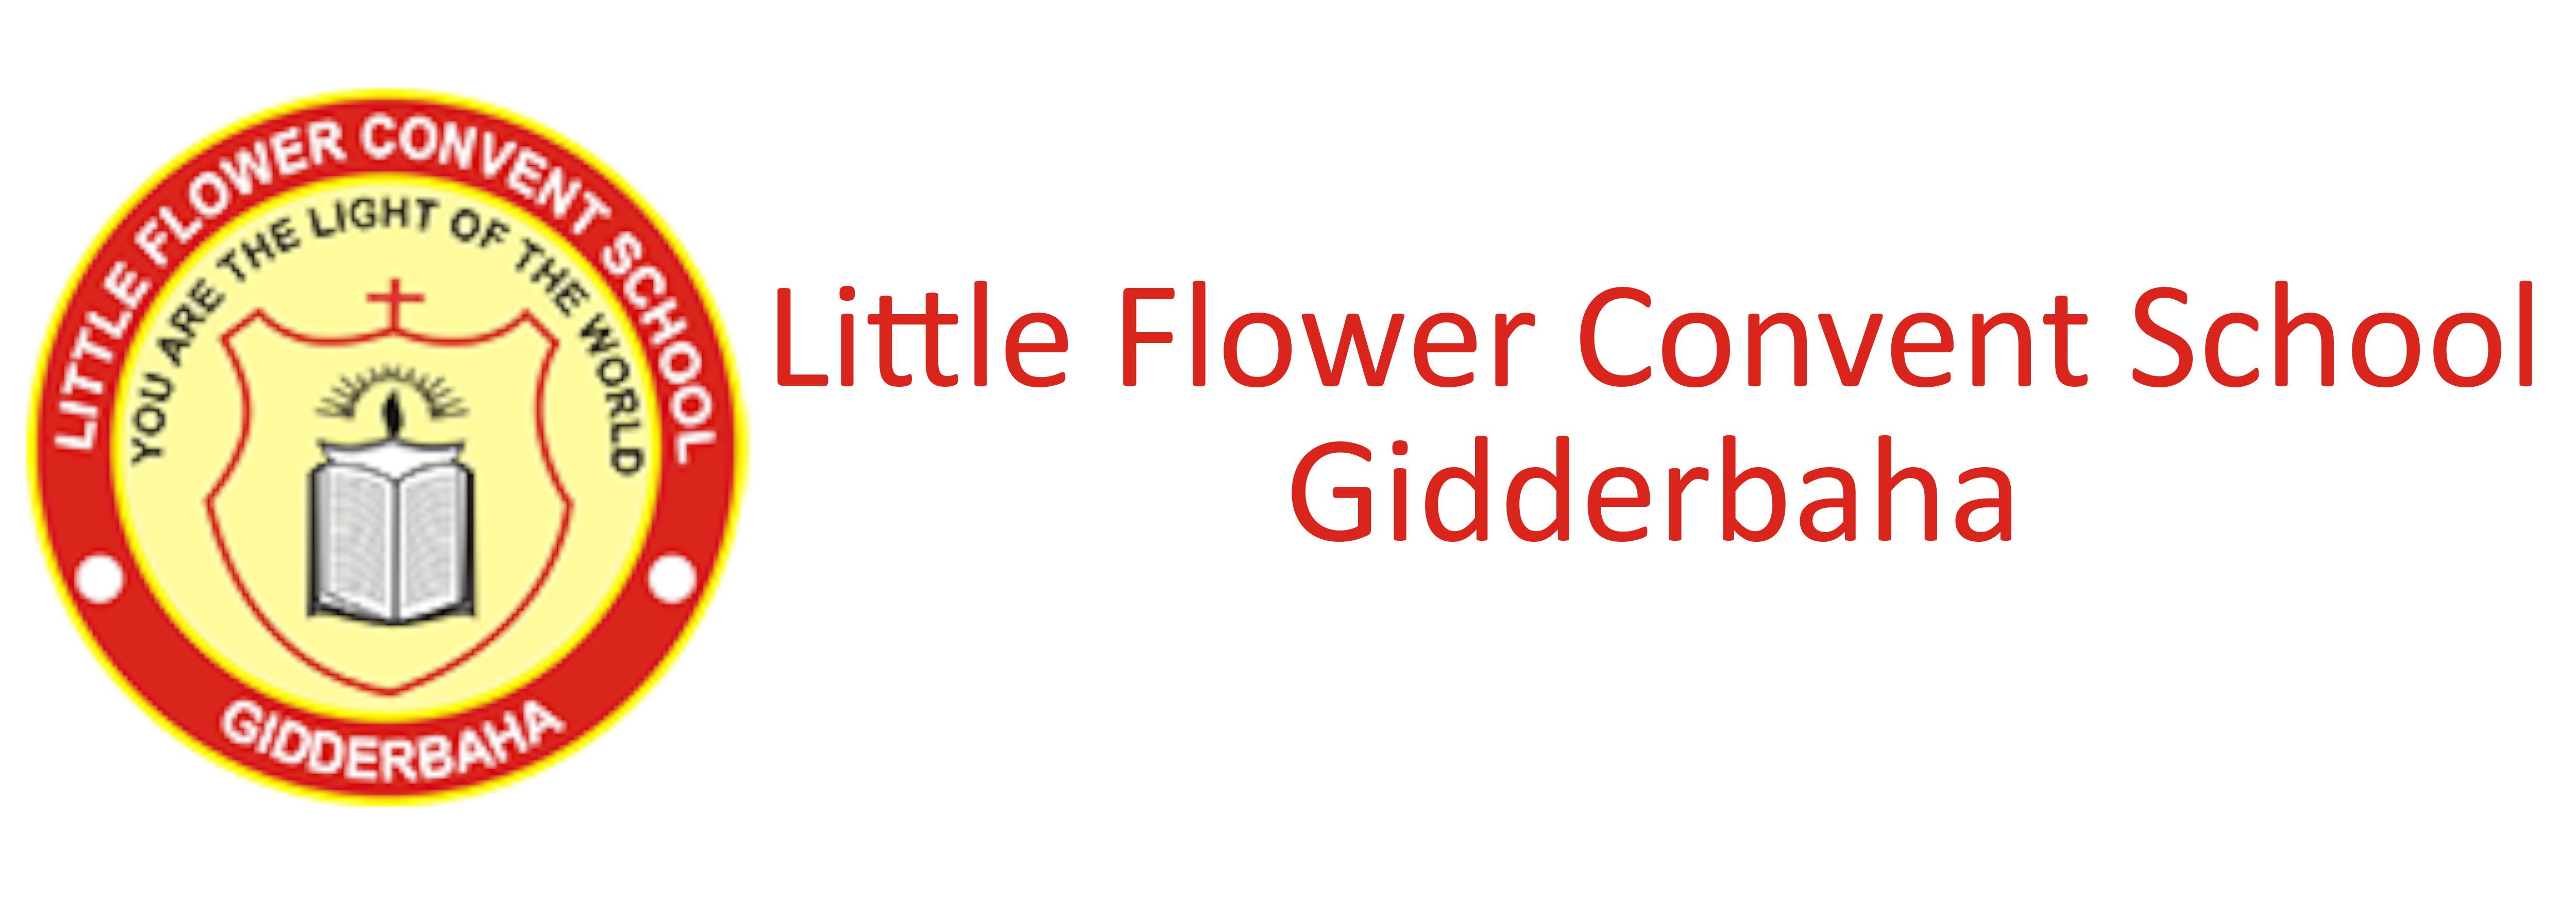 Little Flower Convent School, Gidderbaha